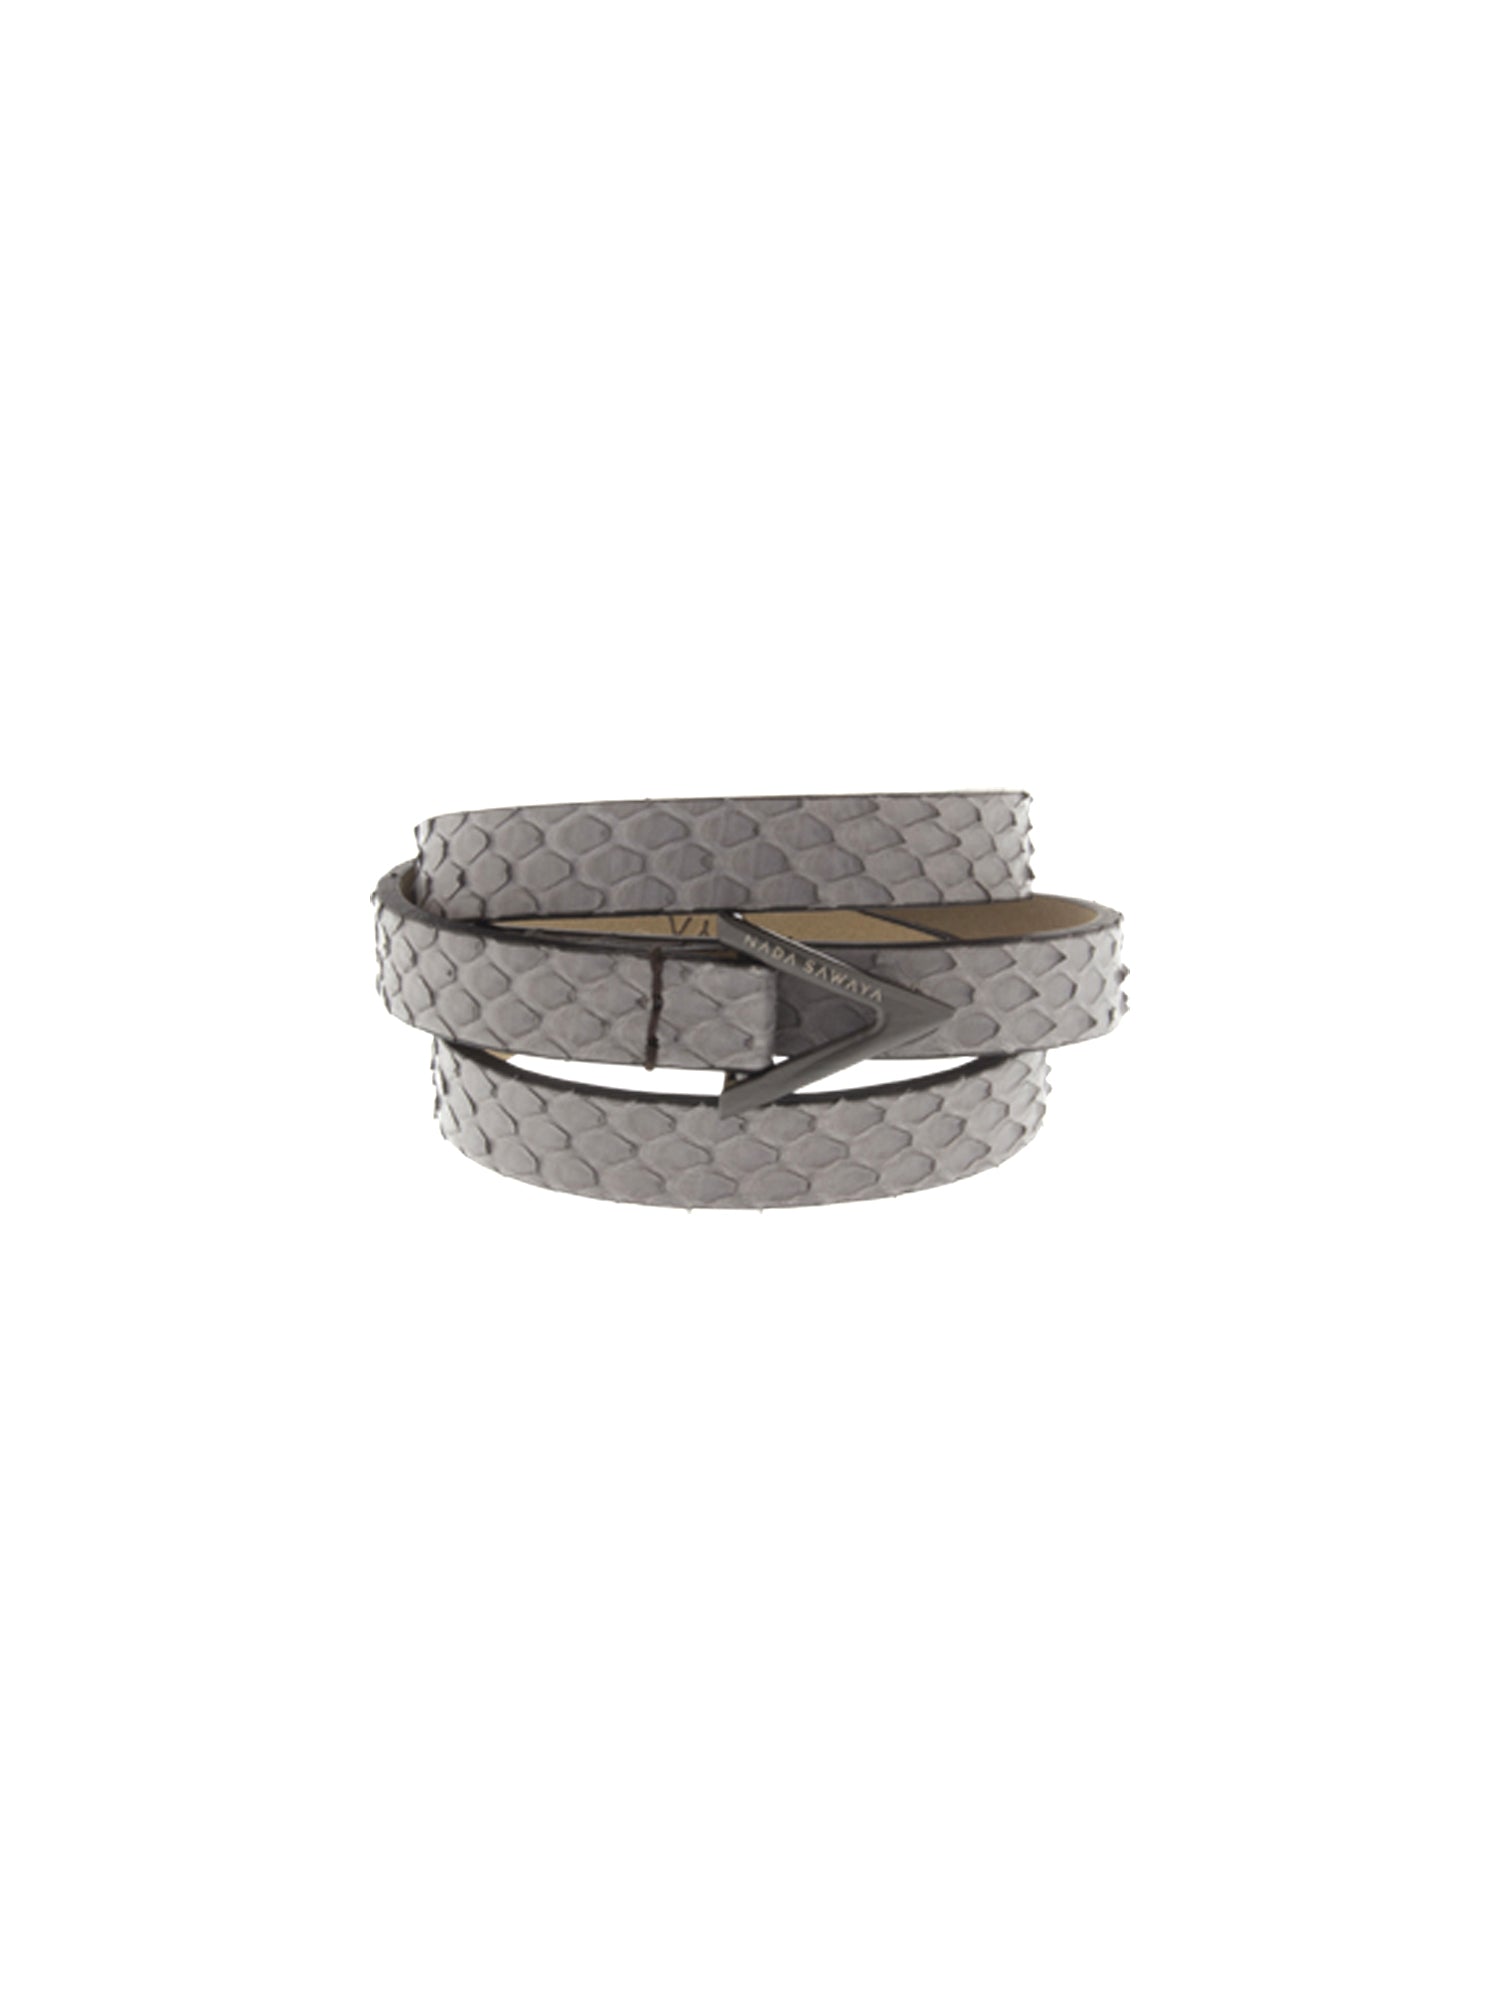 3-Row Wrap Bracelet - Opaque Grey